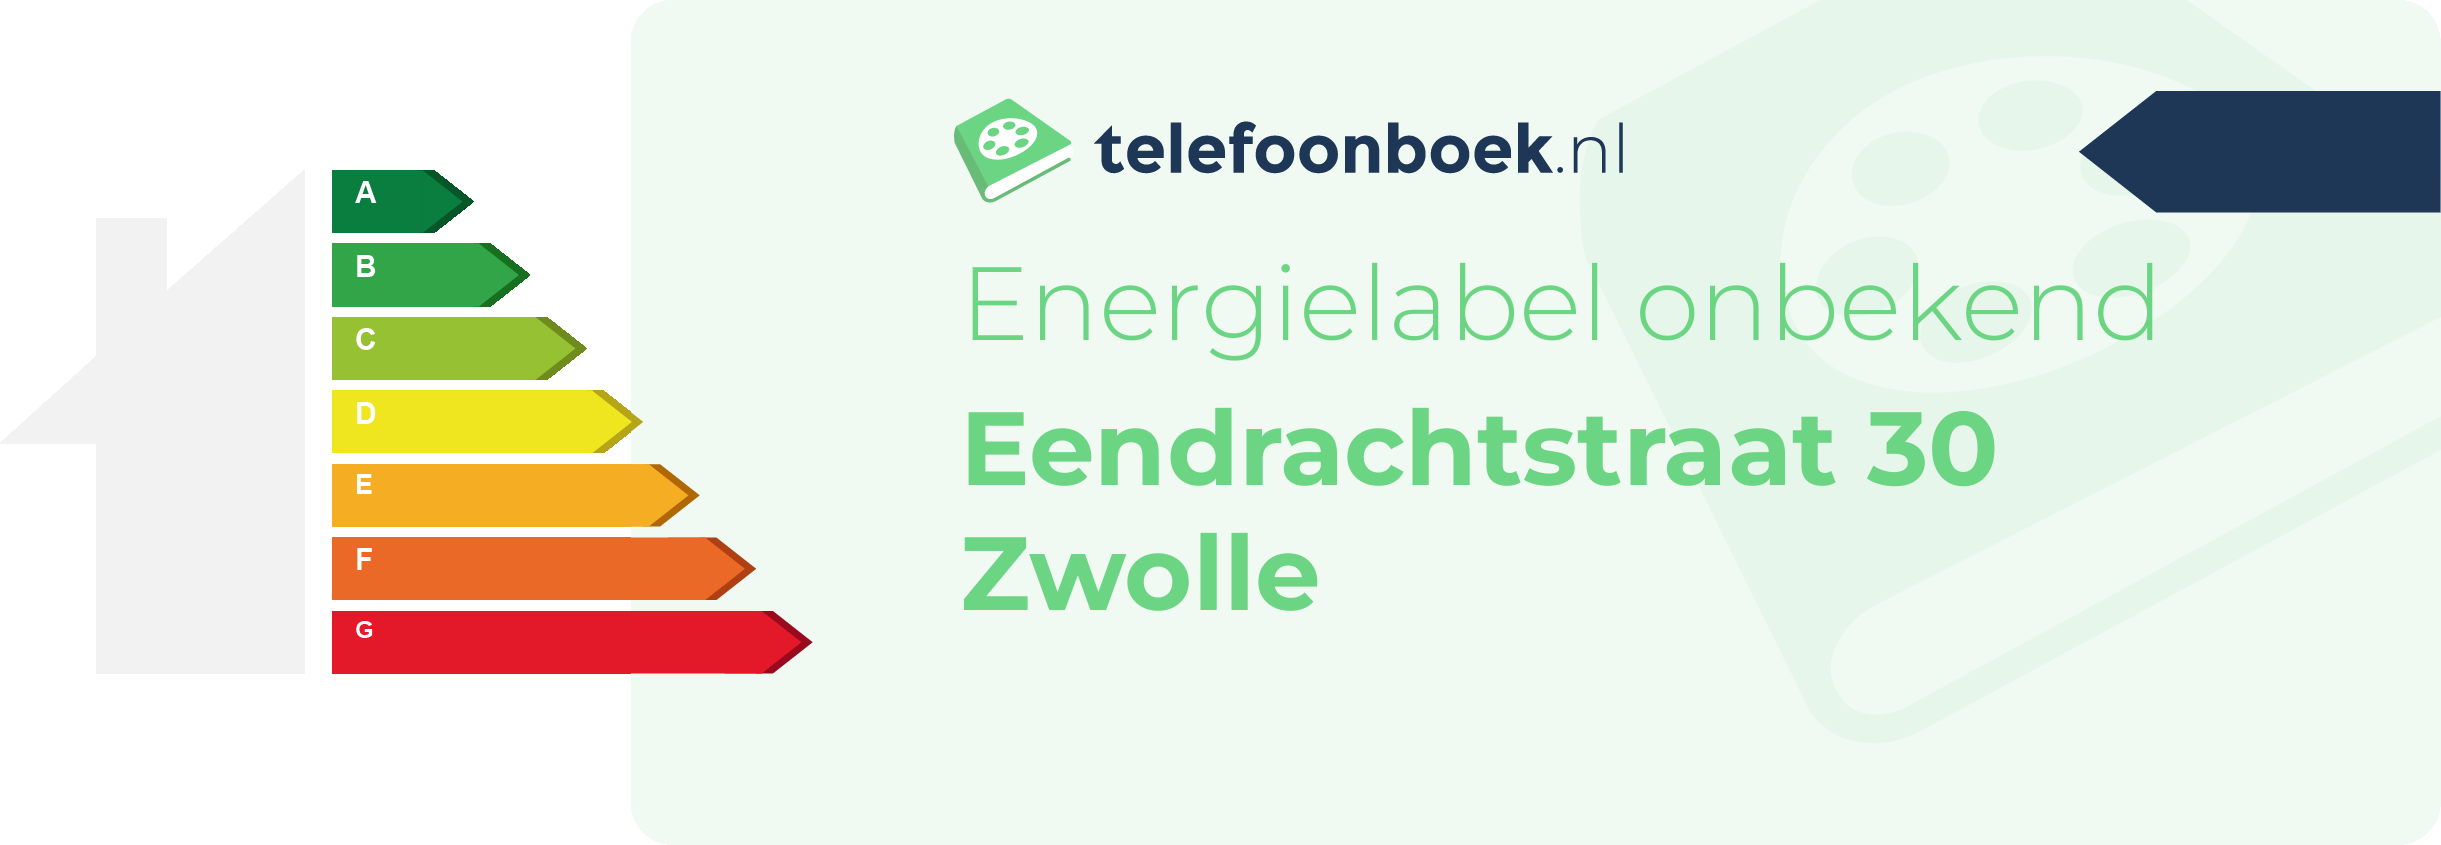 Energielabel Eendrachtstraat 30 Zwolle